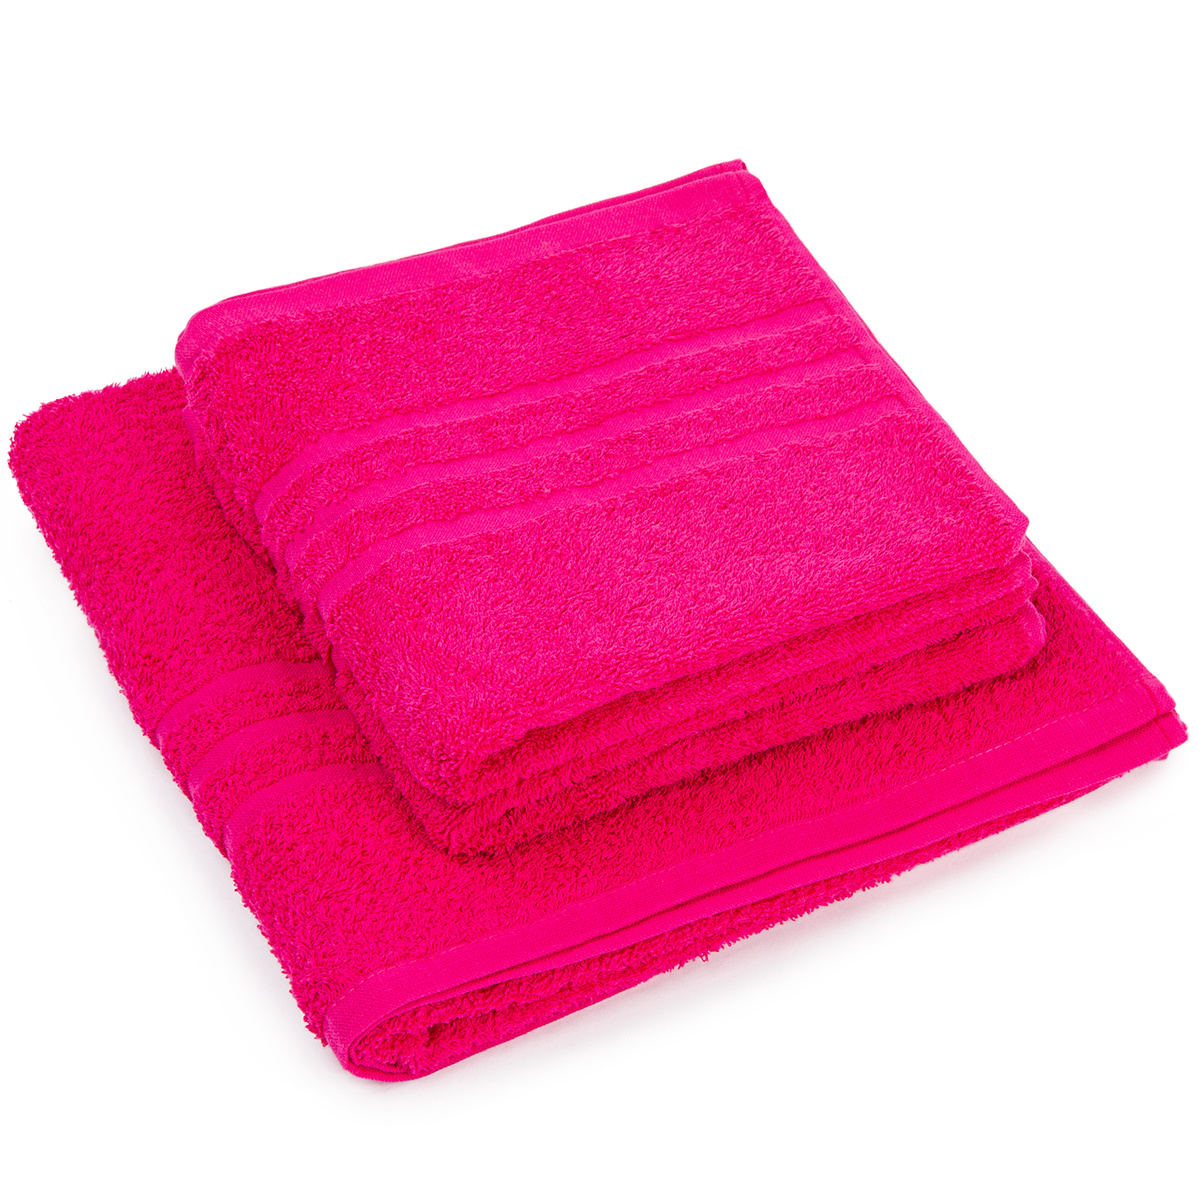 Sada ručníků a osušky Classic růžová, 2 ks 50 x 100 cm, 1 ks 70 x 140 cm